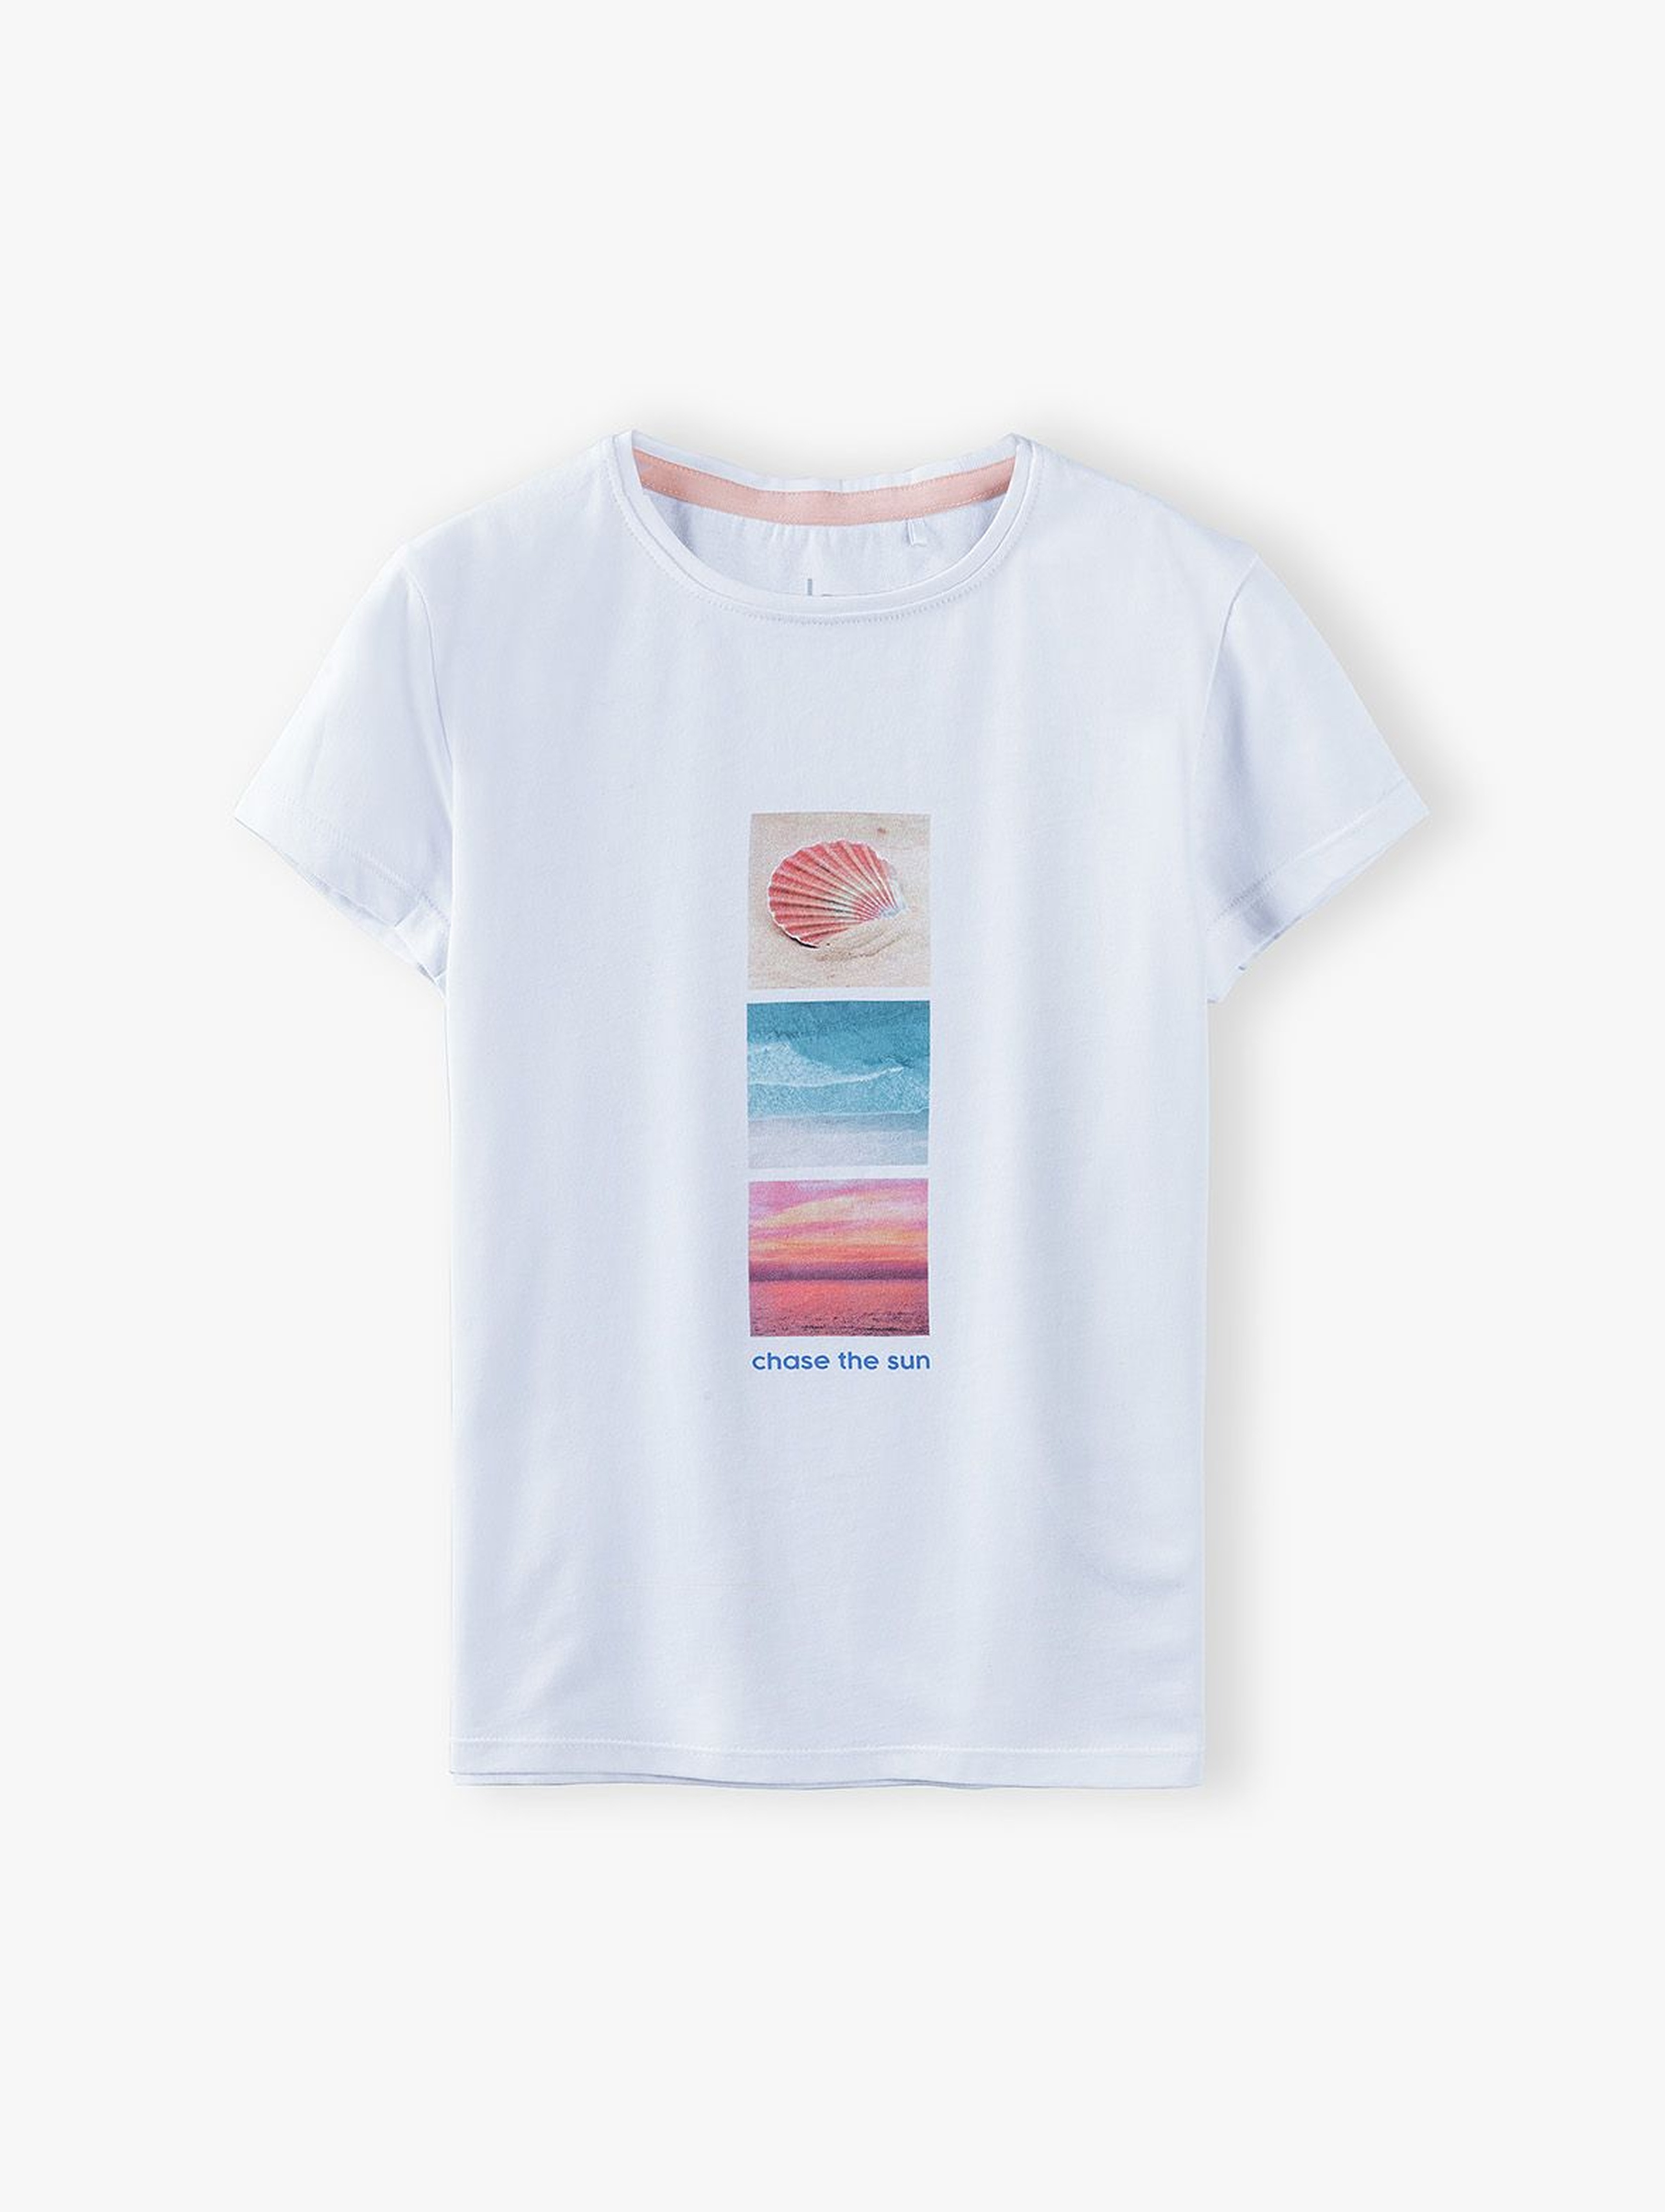 T- shirt dziewczęcy w wakacyjnymi nadrukami- Chase the sun